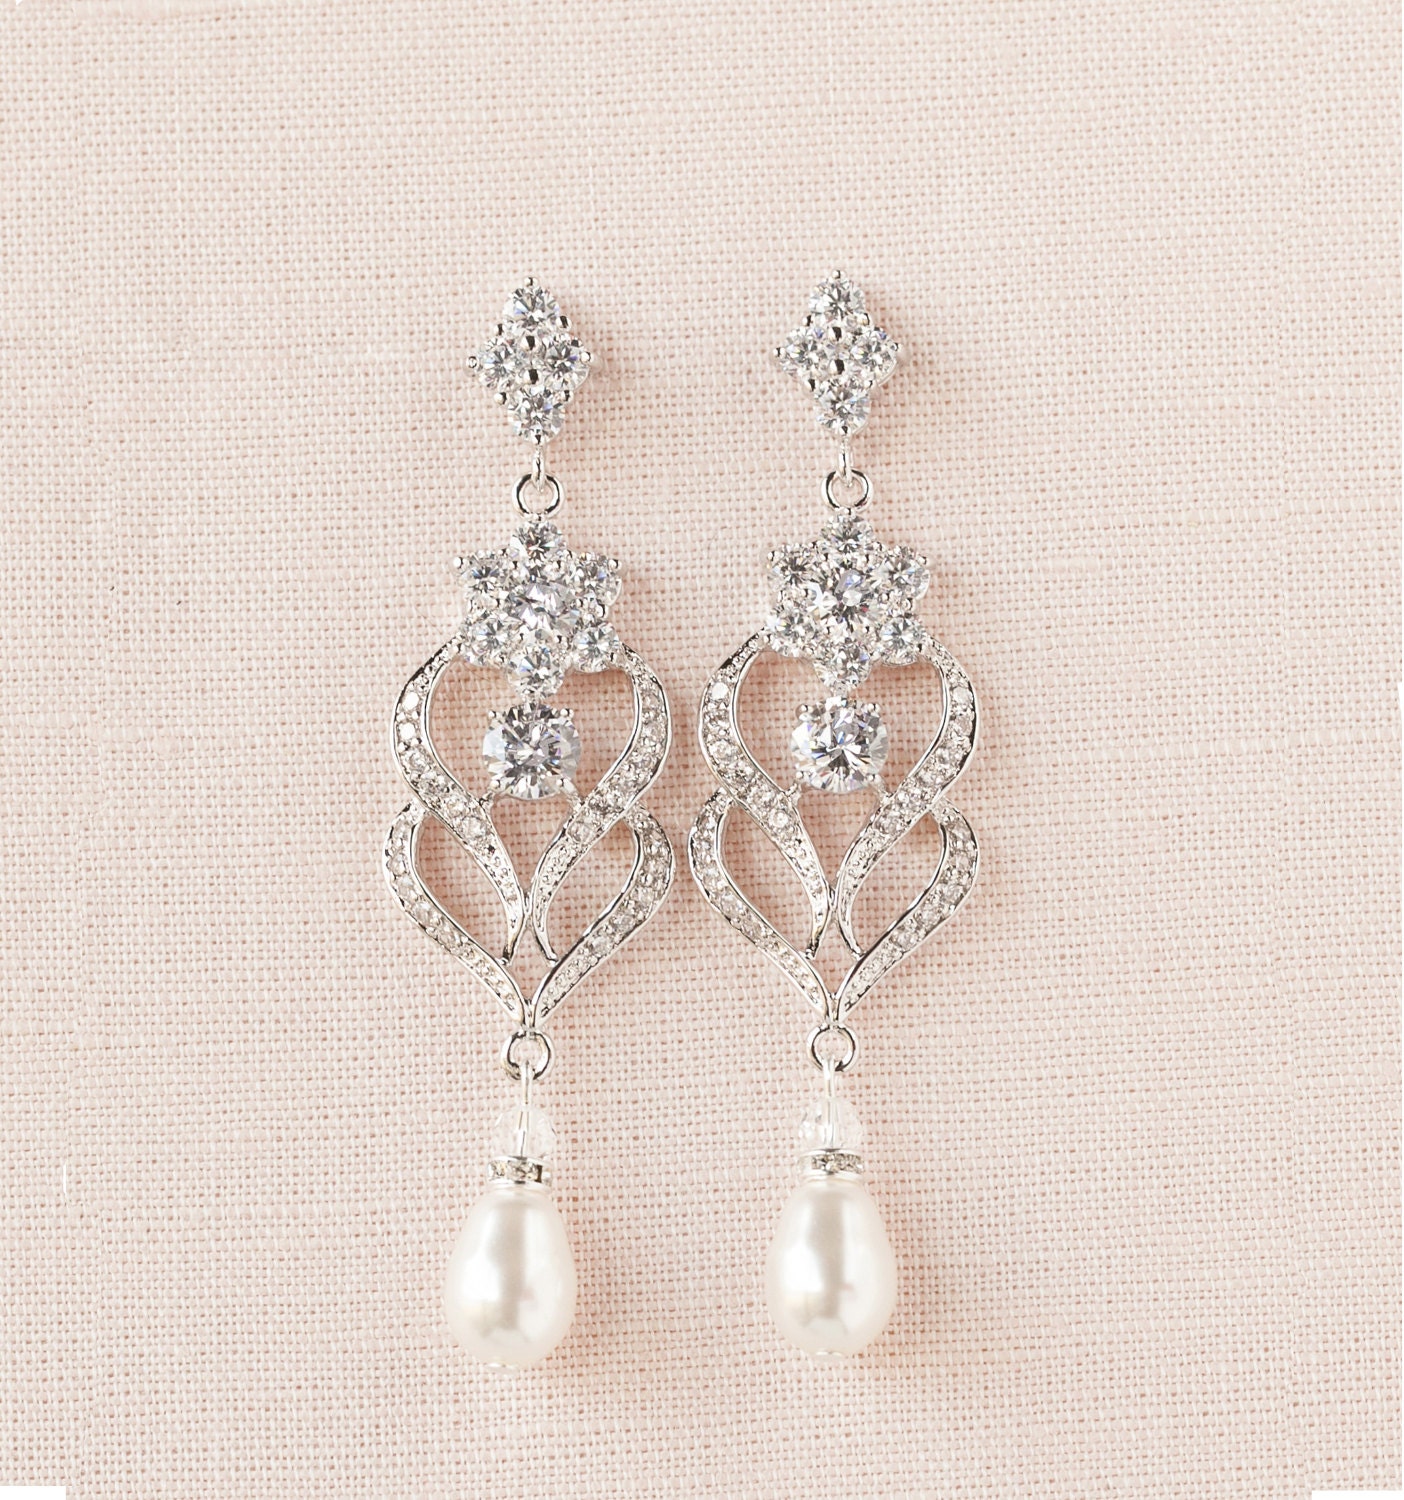 Bridal Earrings, Wedding Jewelry, Chandelier wedding earrings, Swarovski Crystal, Bridesmaids, Kathryn Crystal Earrings